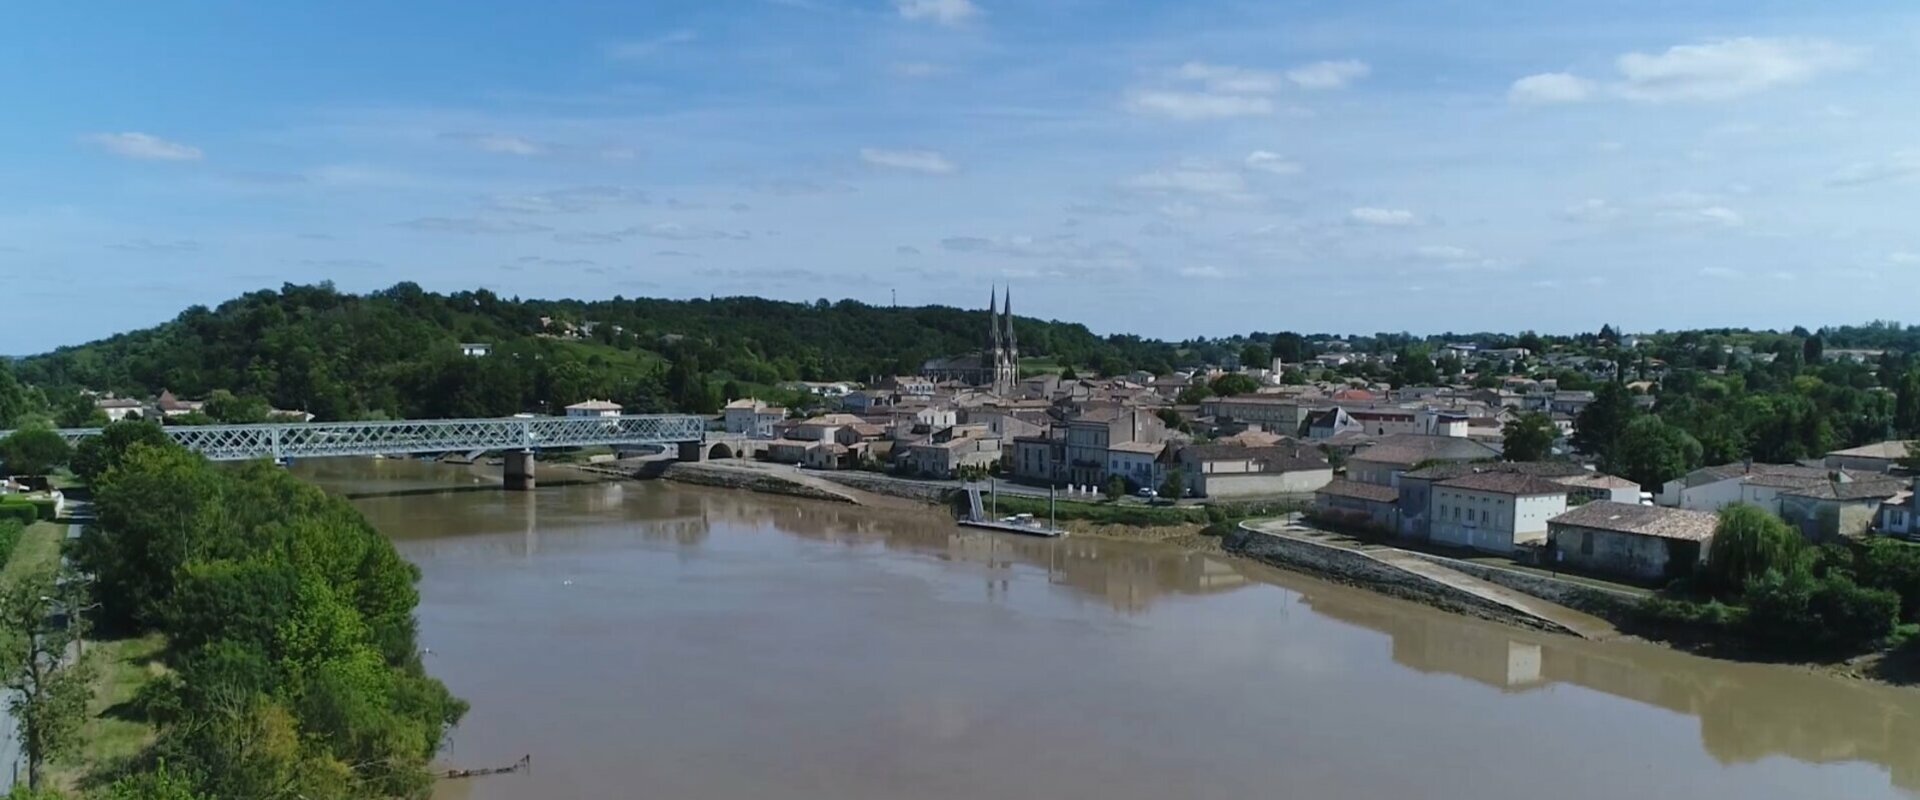 Pineuilh - Aquitaine Gironde